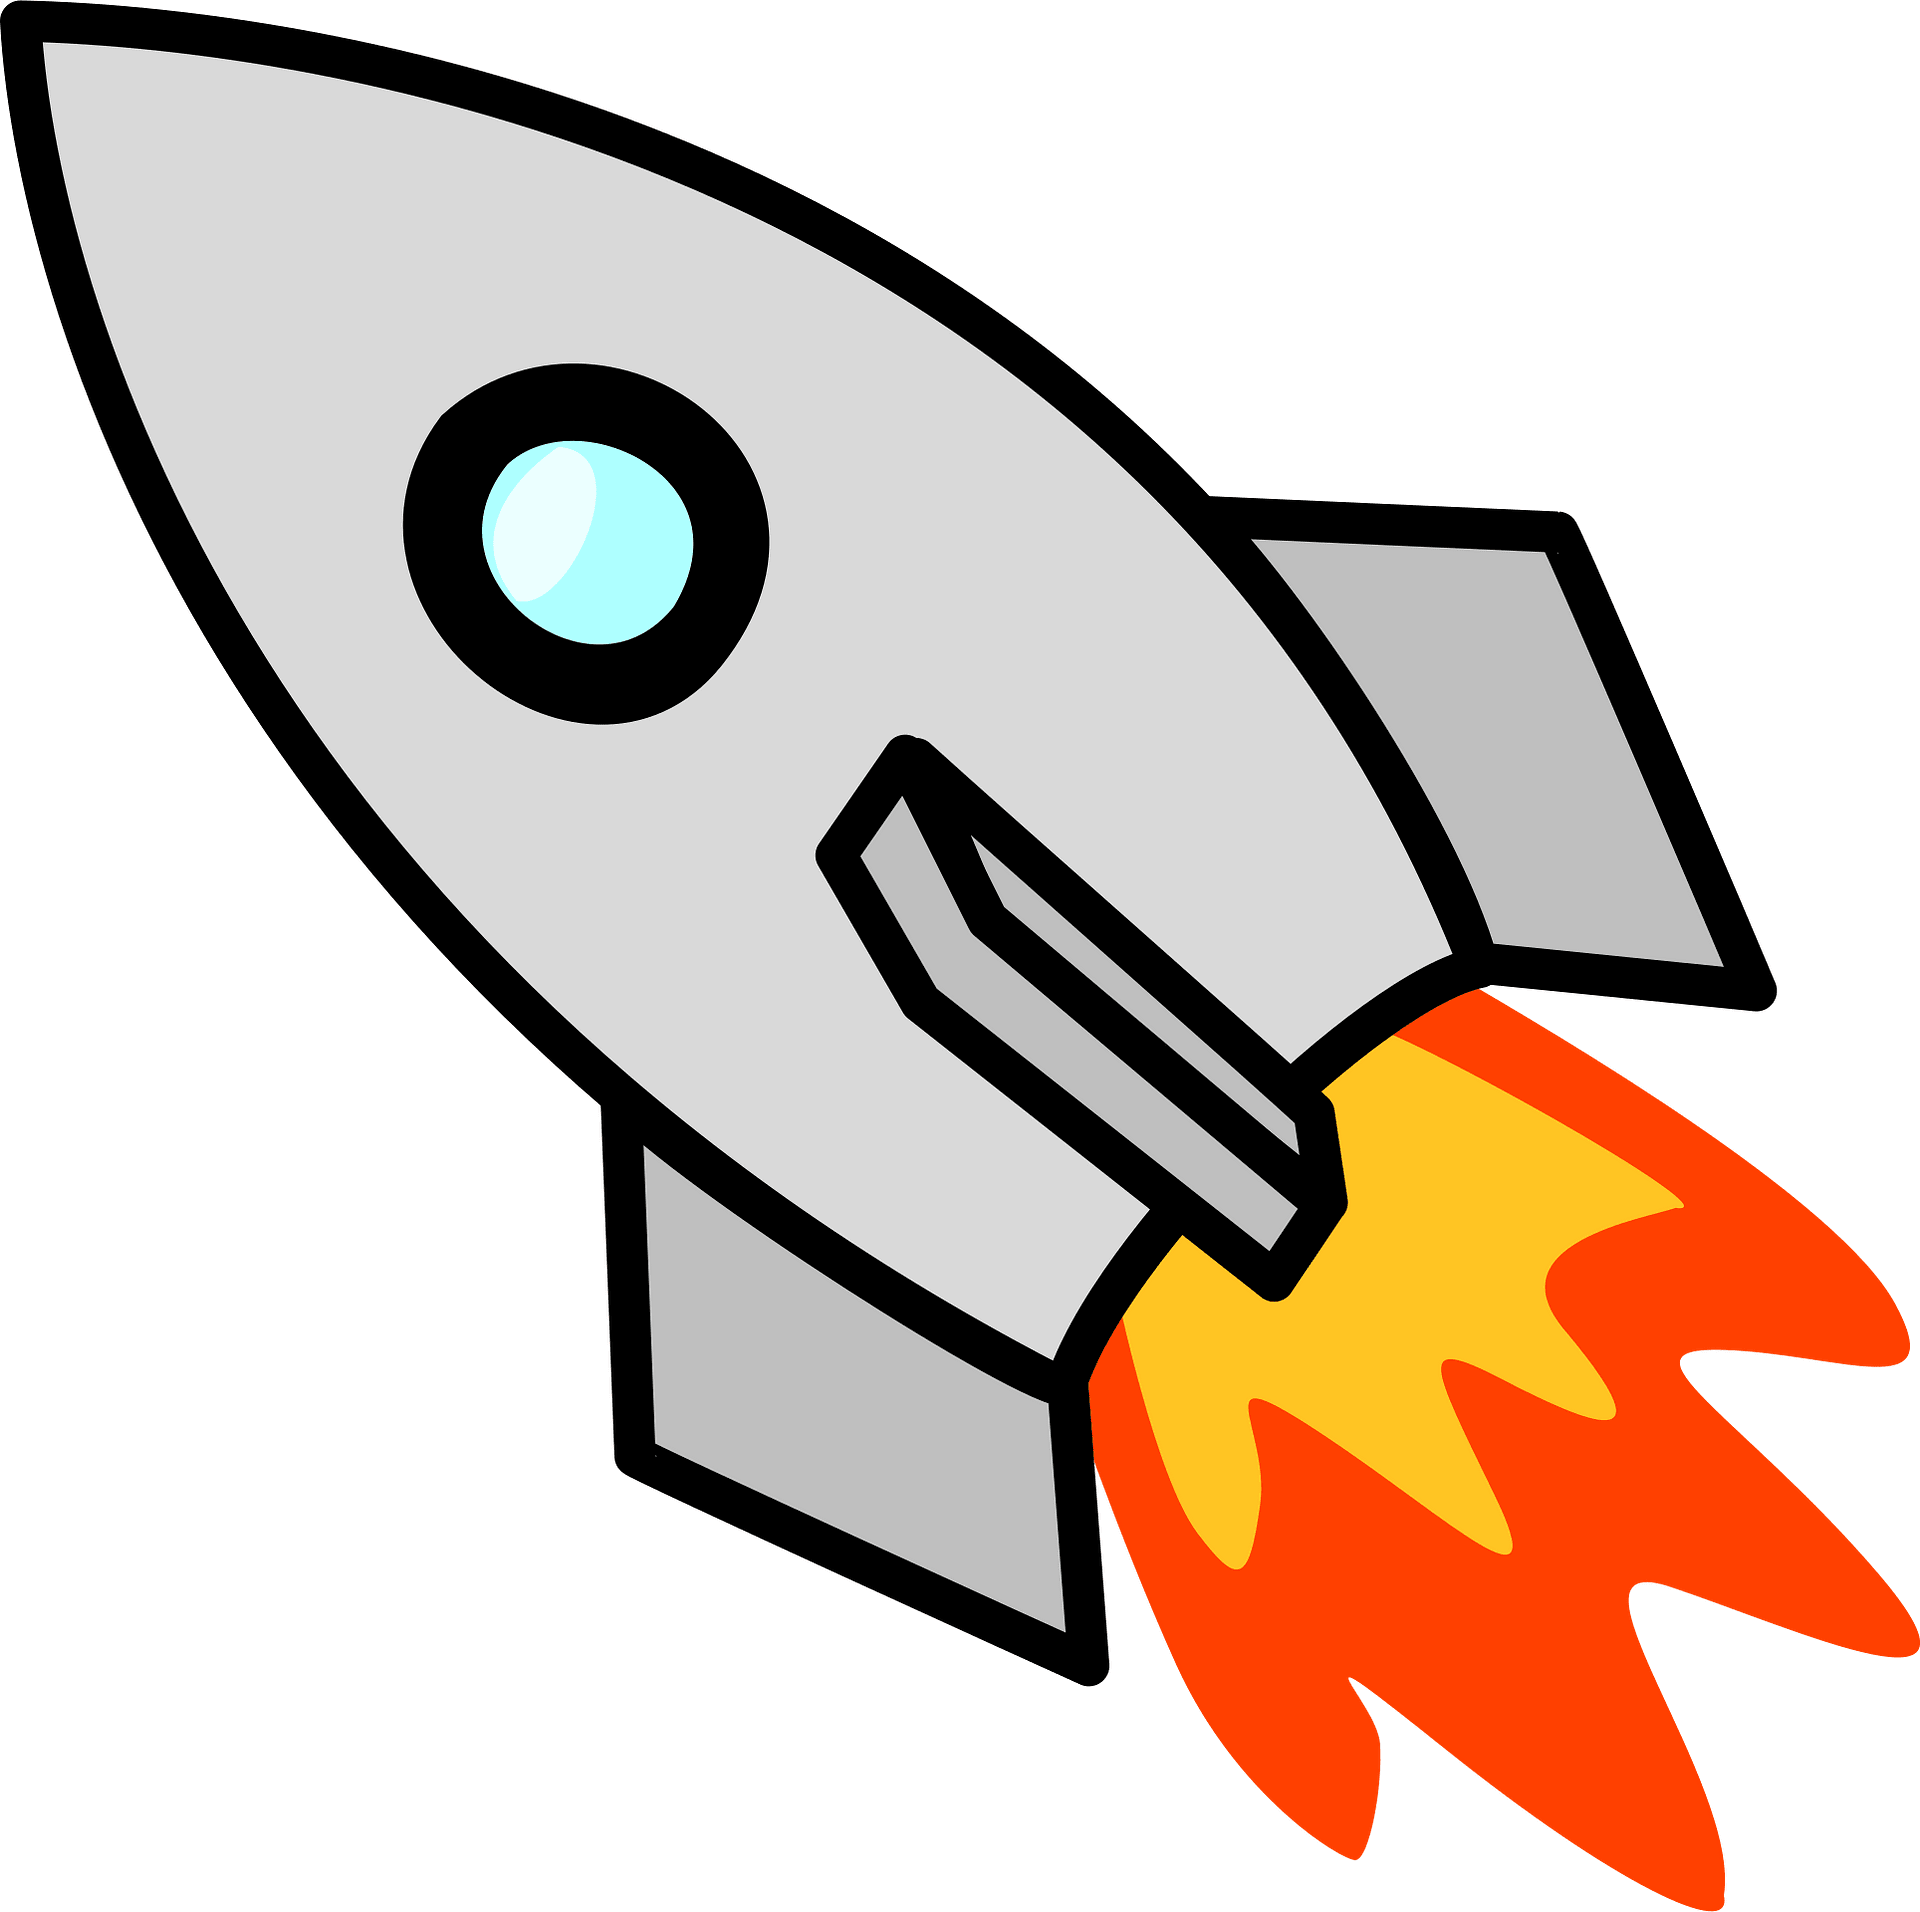 Rocket spaceship clipart design illustration 9394204 PNG